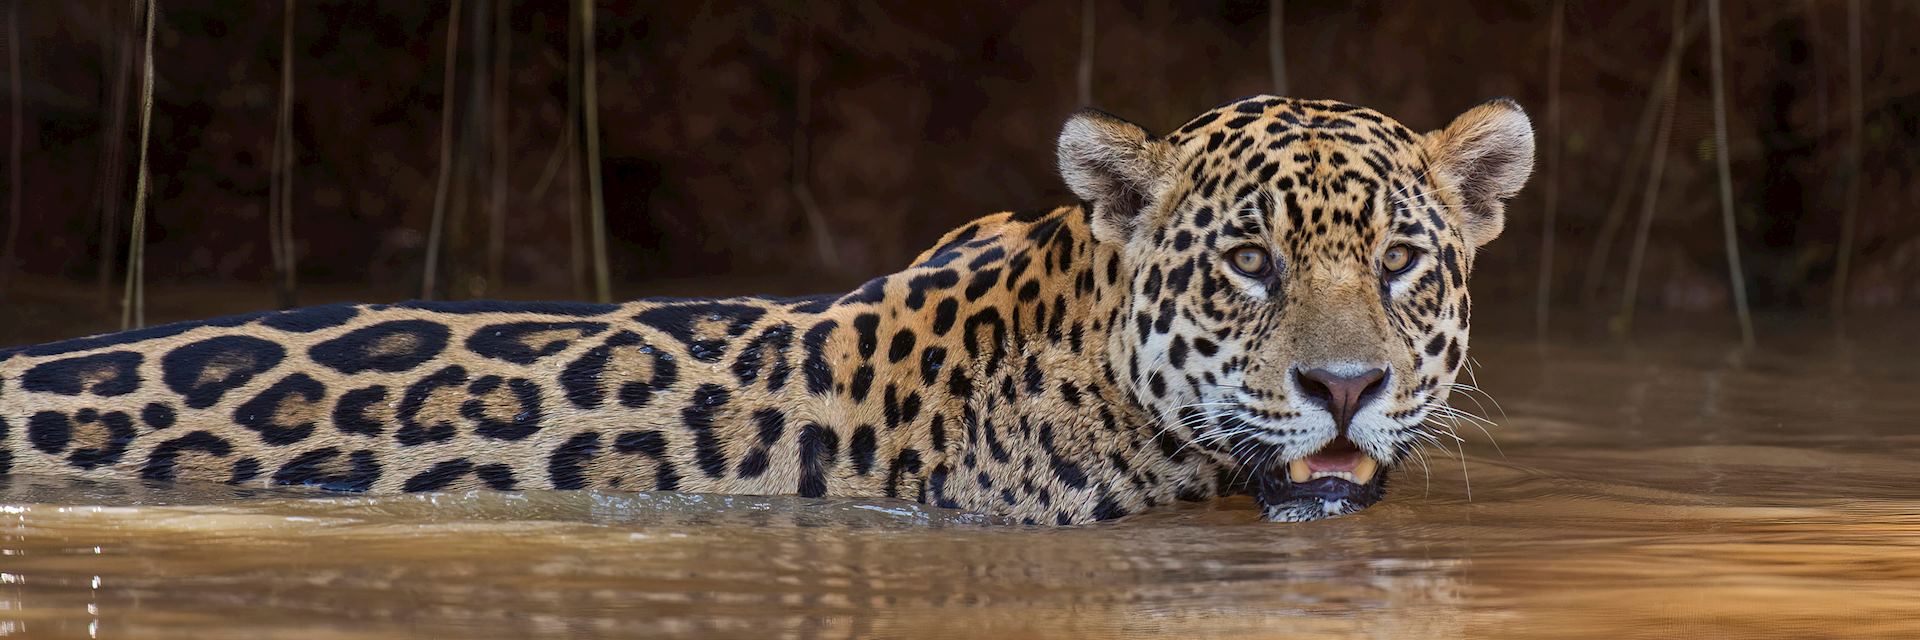 Jaguar in the Pantanal Wetlands, Brazil